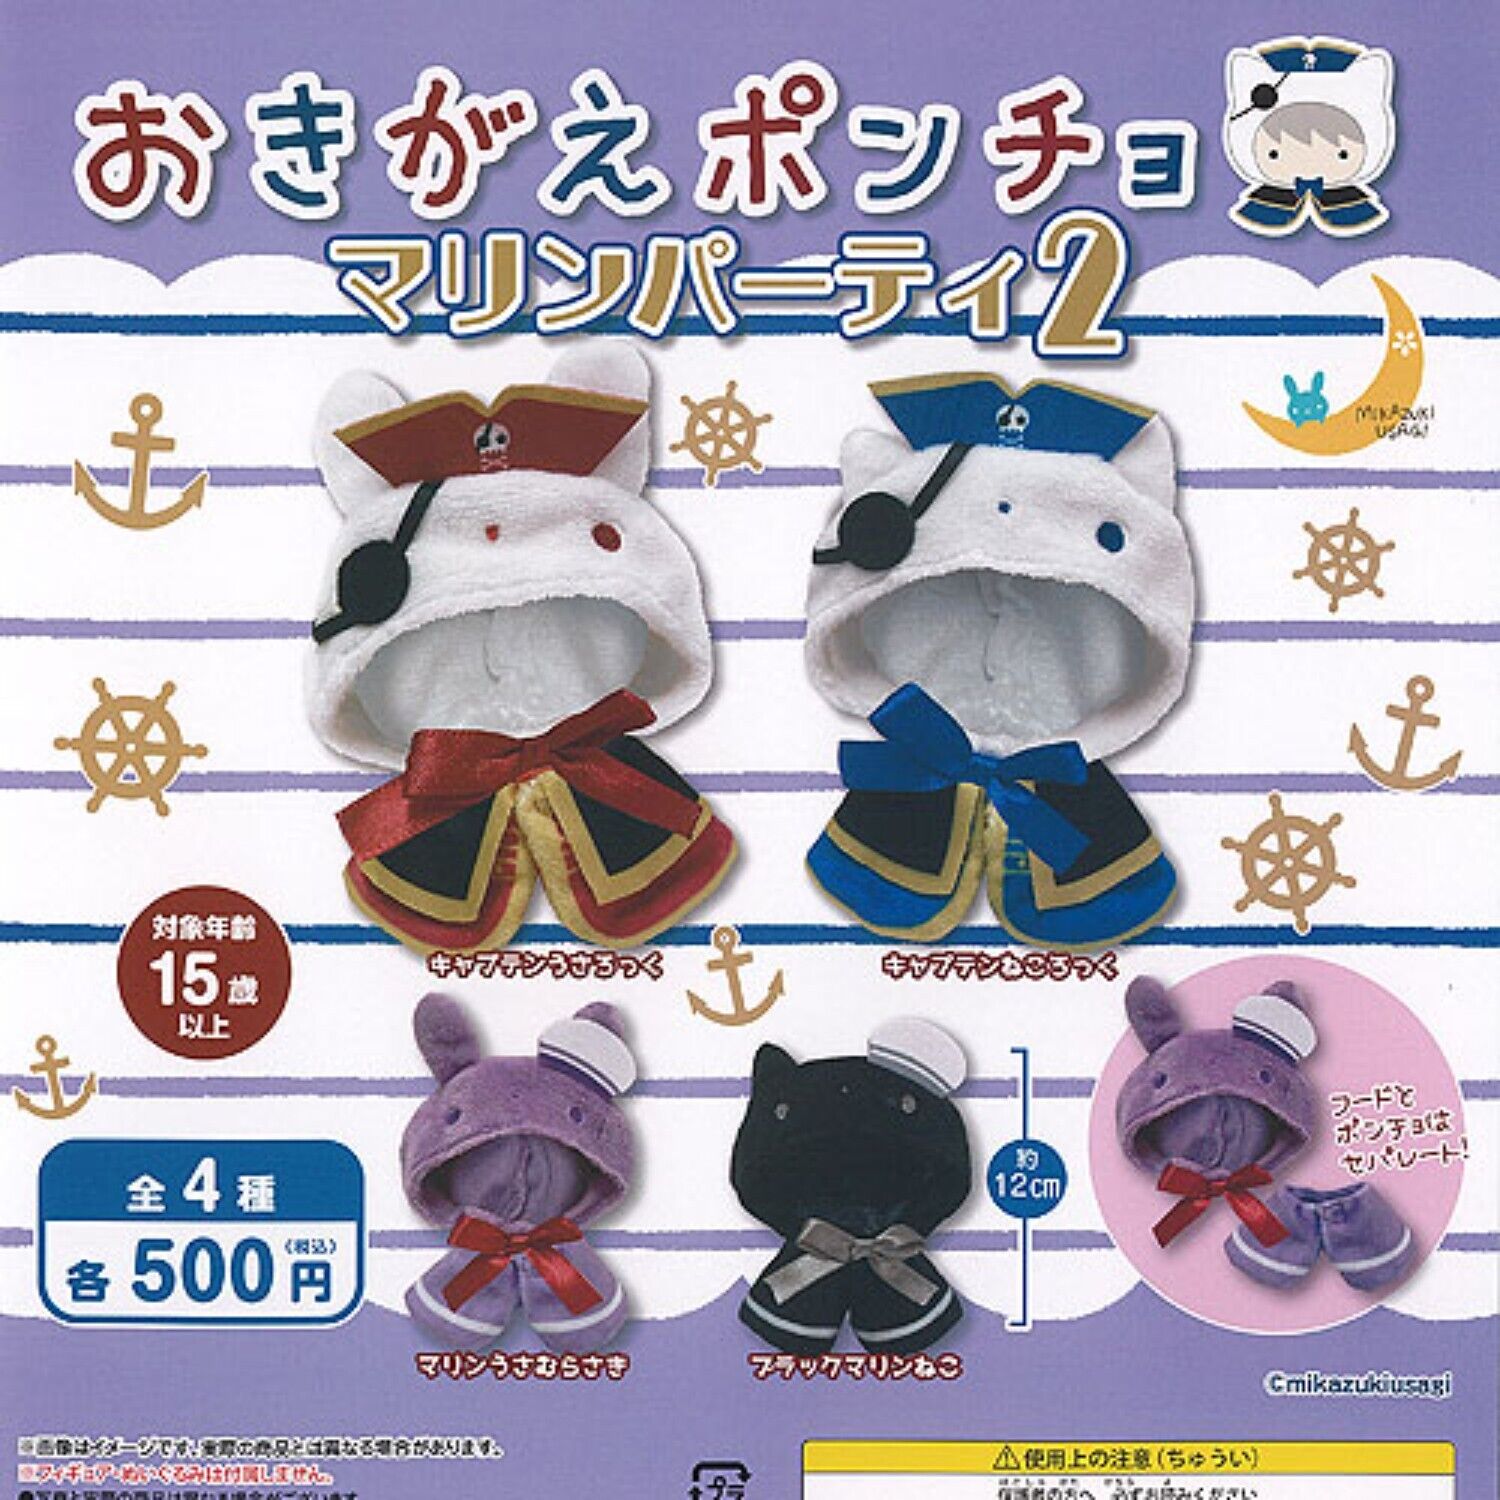 Okigae poncho Marine Party Mascot Capsule Toy 4 Types Full Comp Set Gacha New